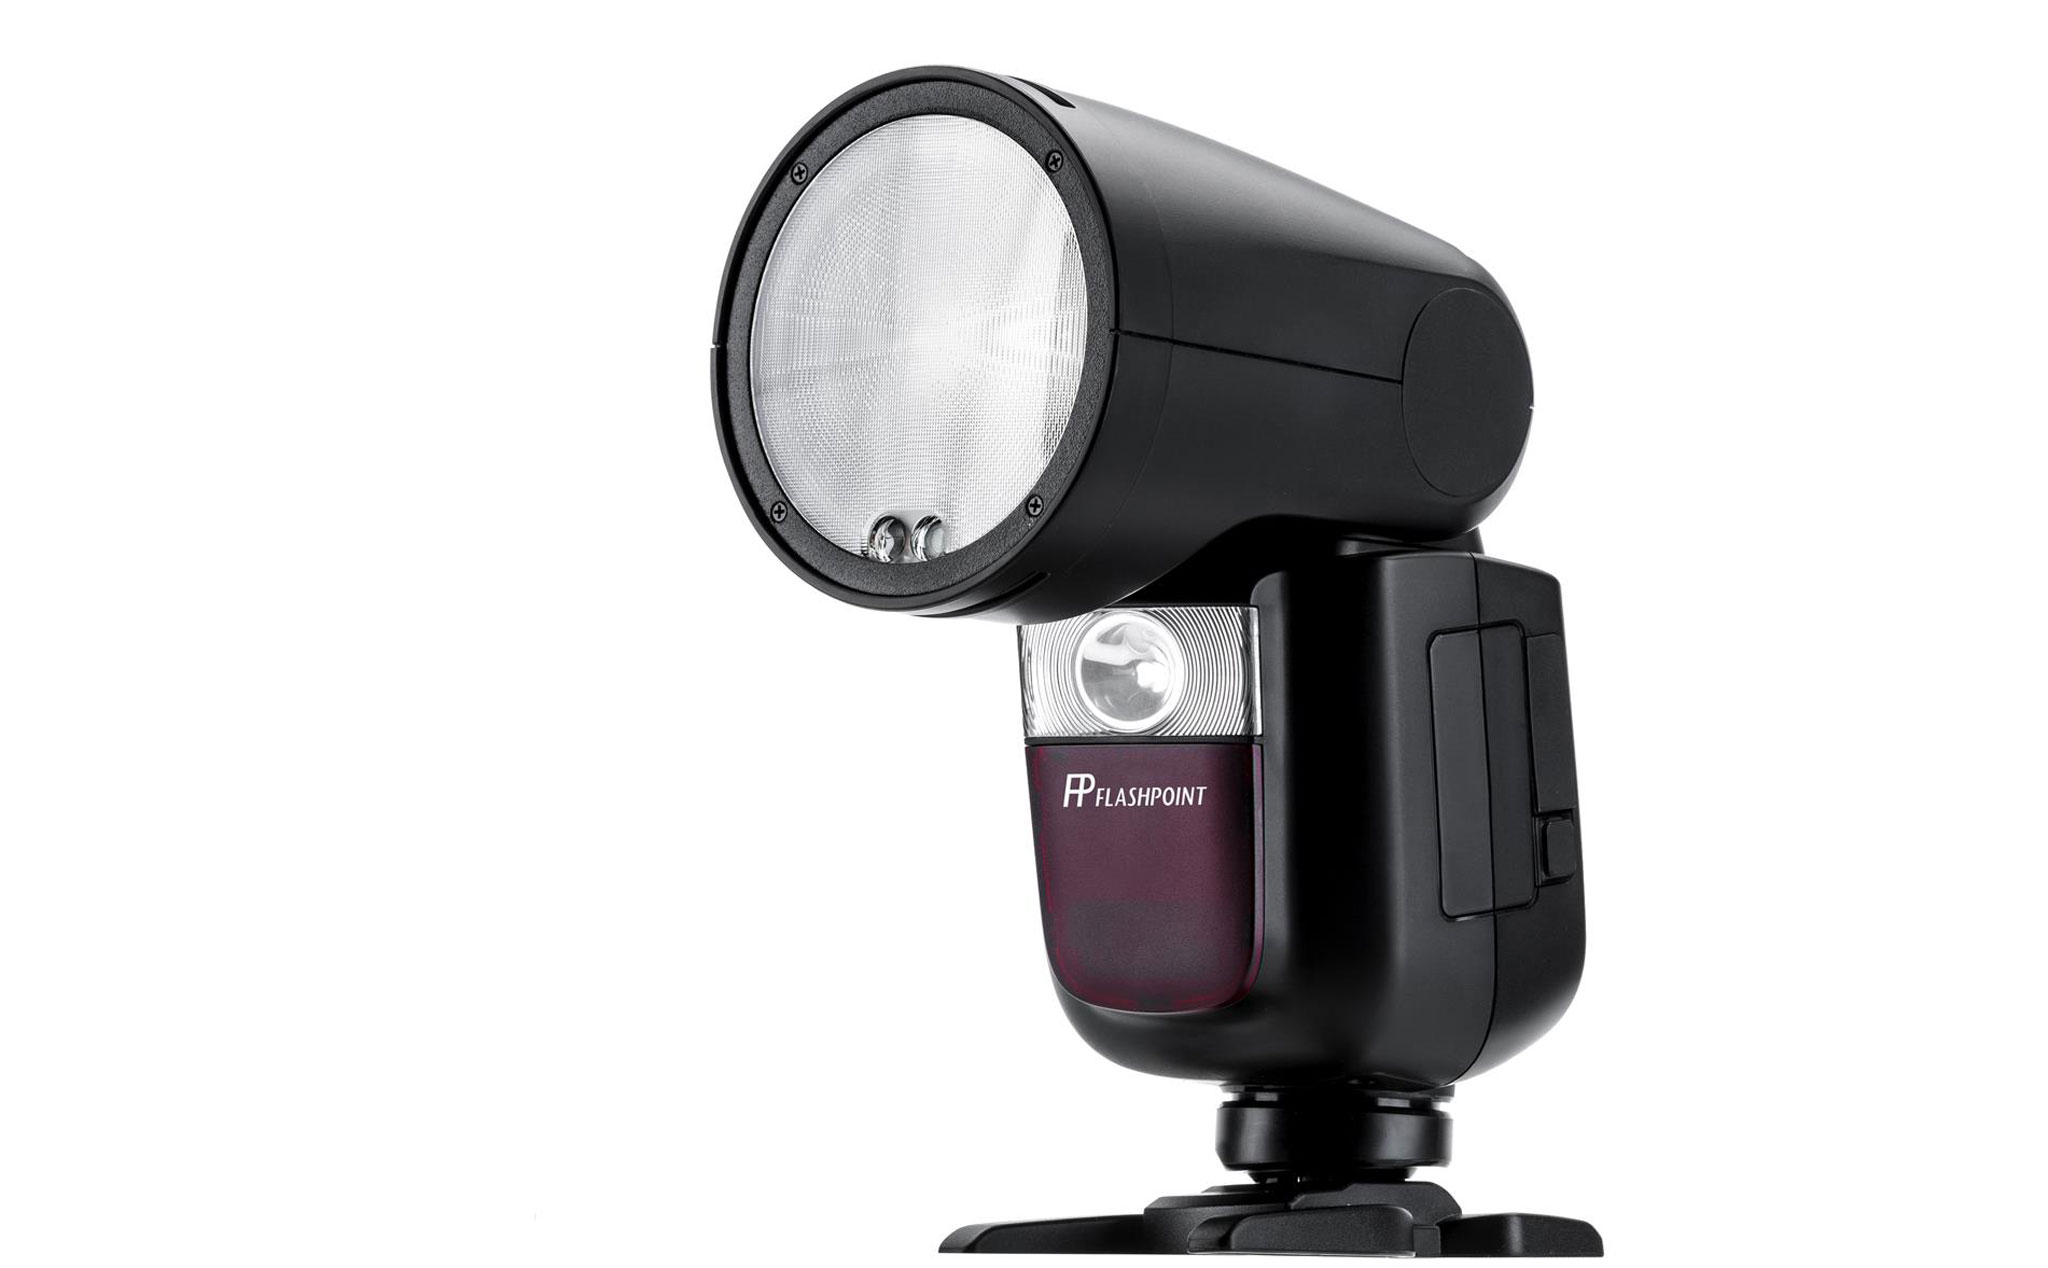 Godox giới thiệu đèn flash V1: đối thủ của chiếc on-camera flash studio nhỏ nhất Profoto A1